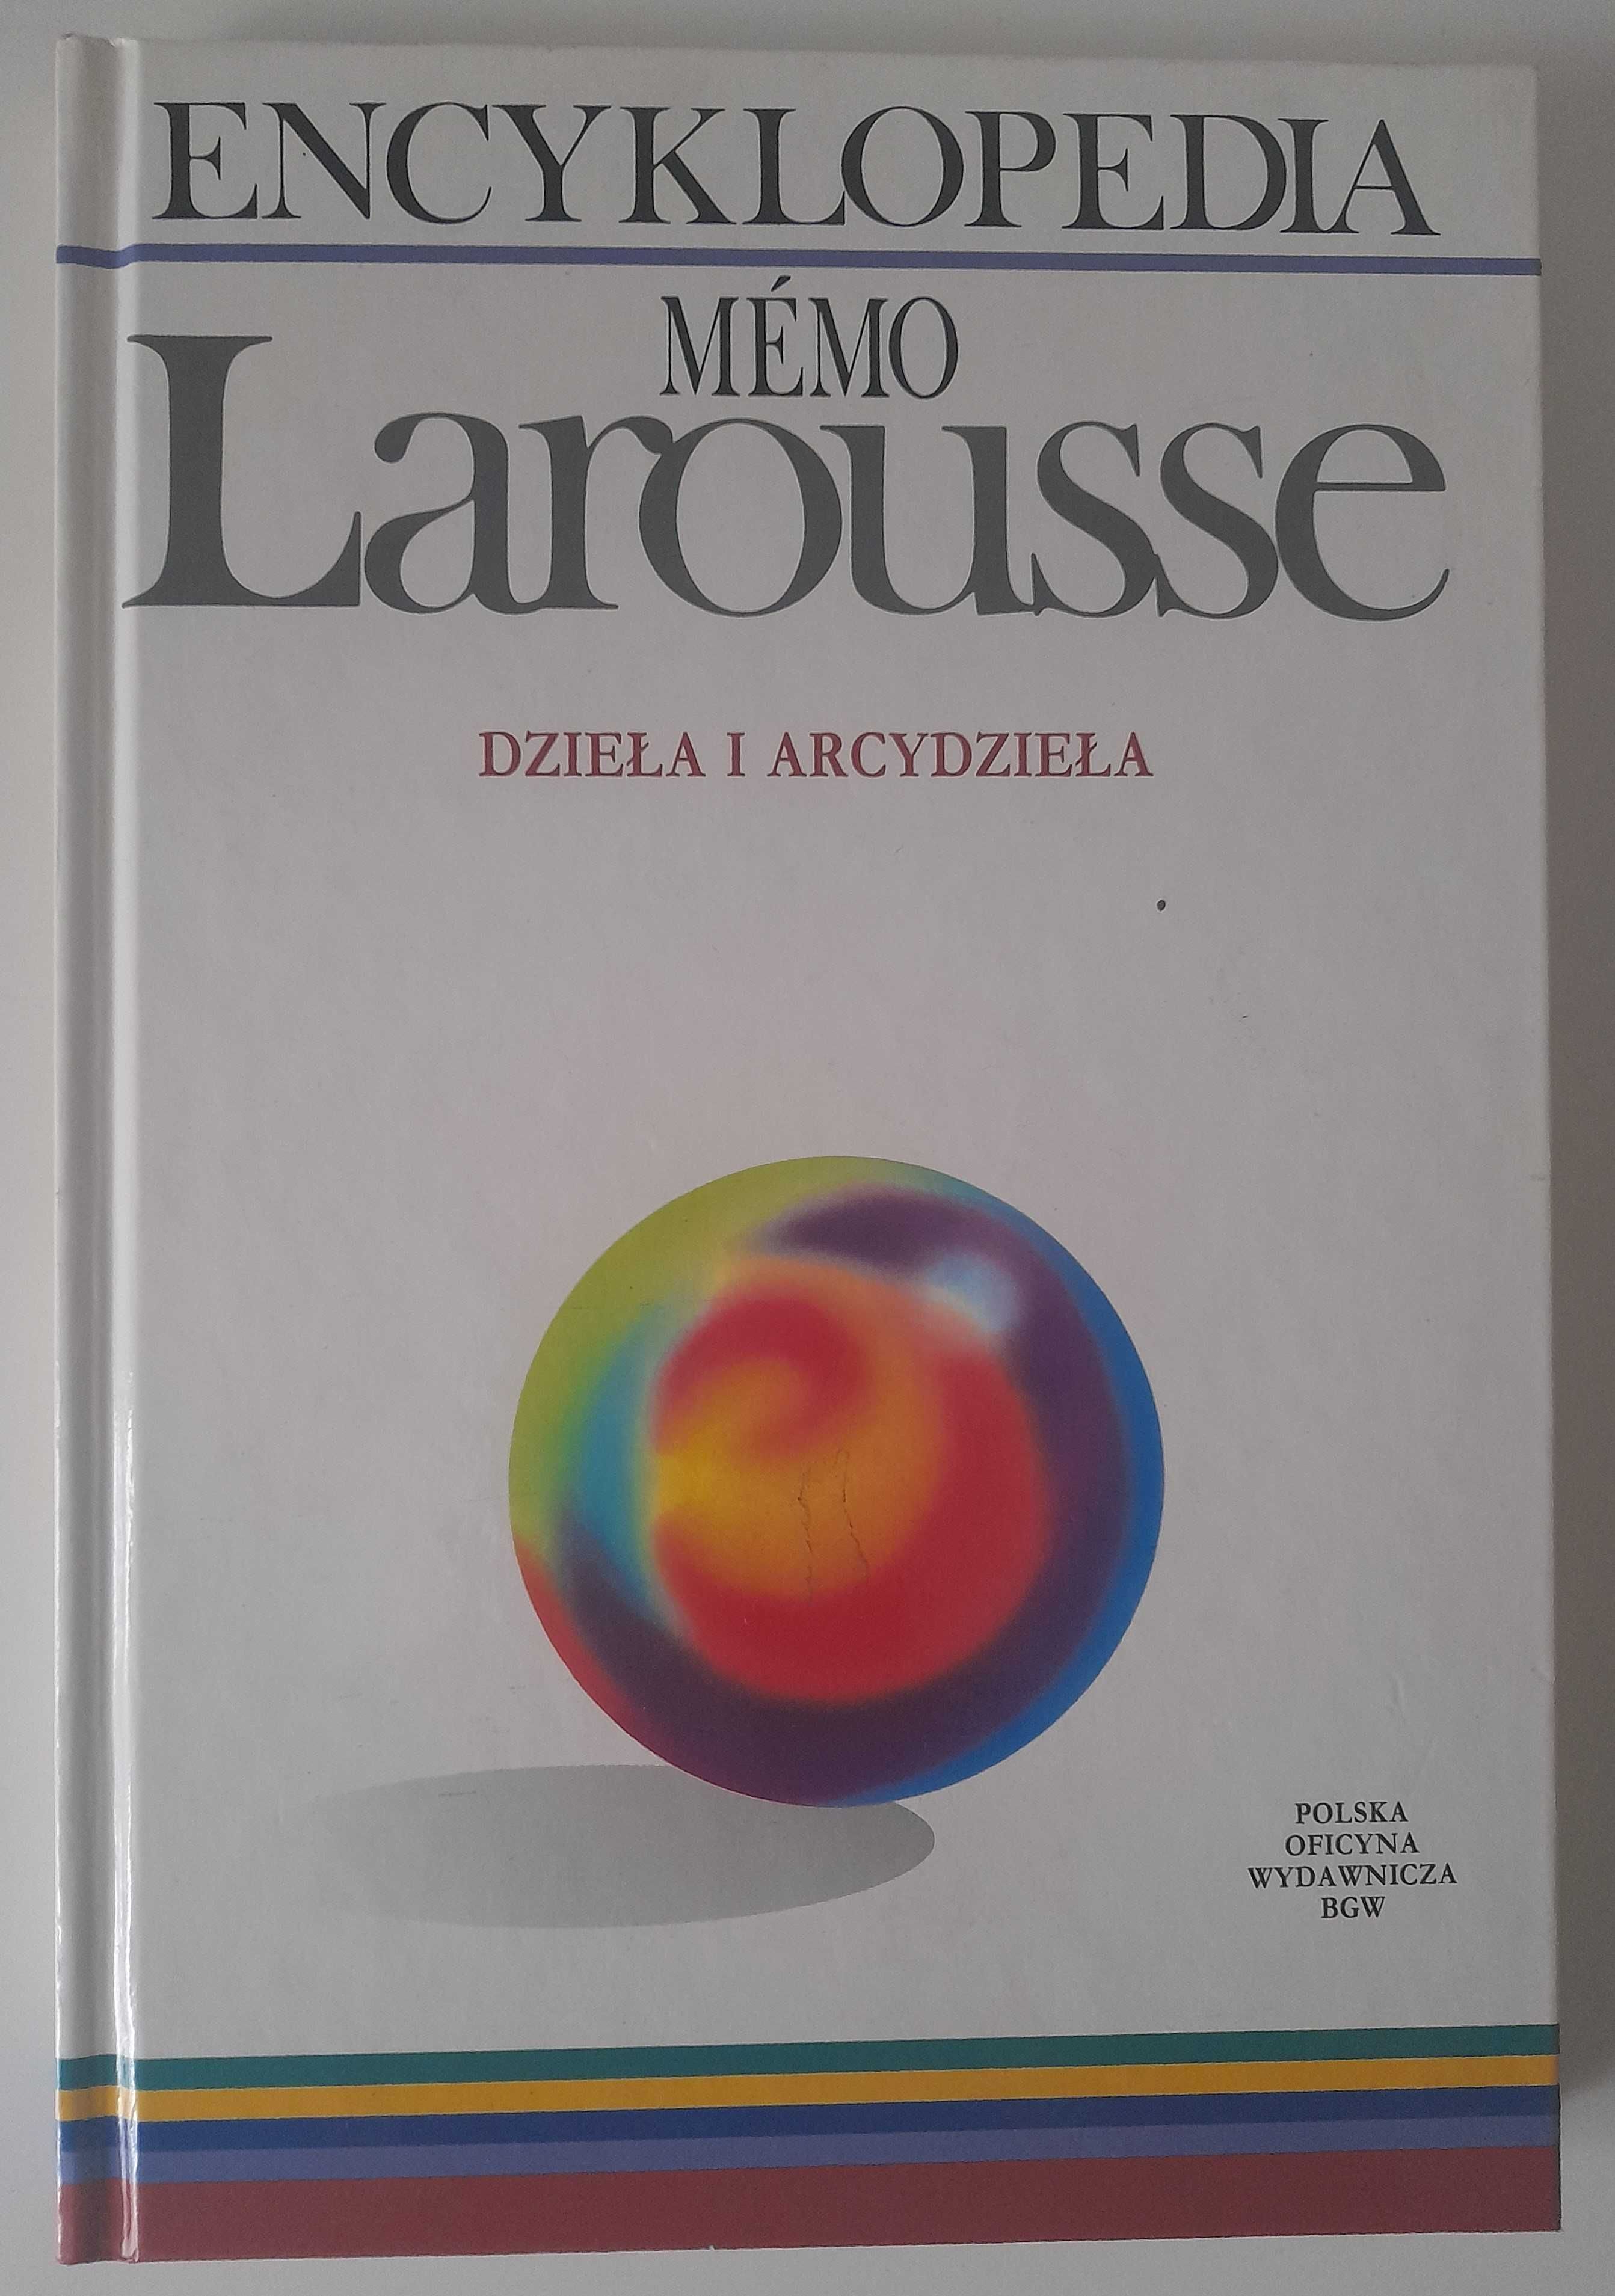 Encyklopedia Memo Larousse: Dzieła i arcydzieła